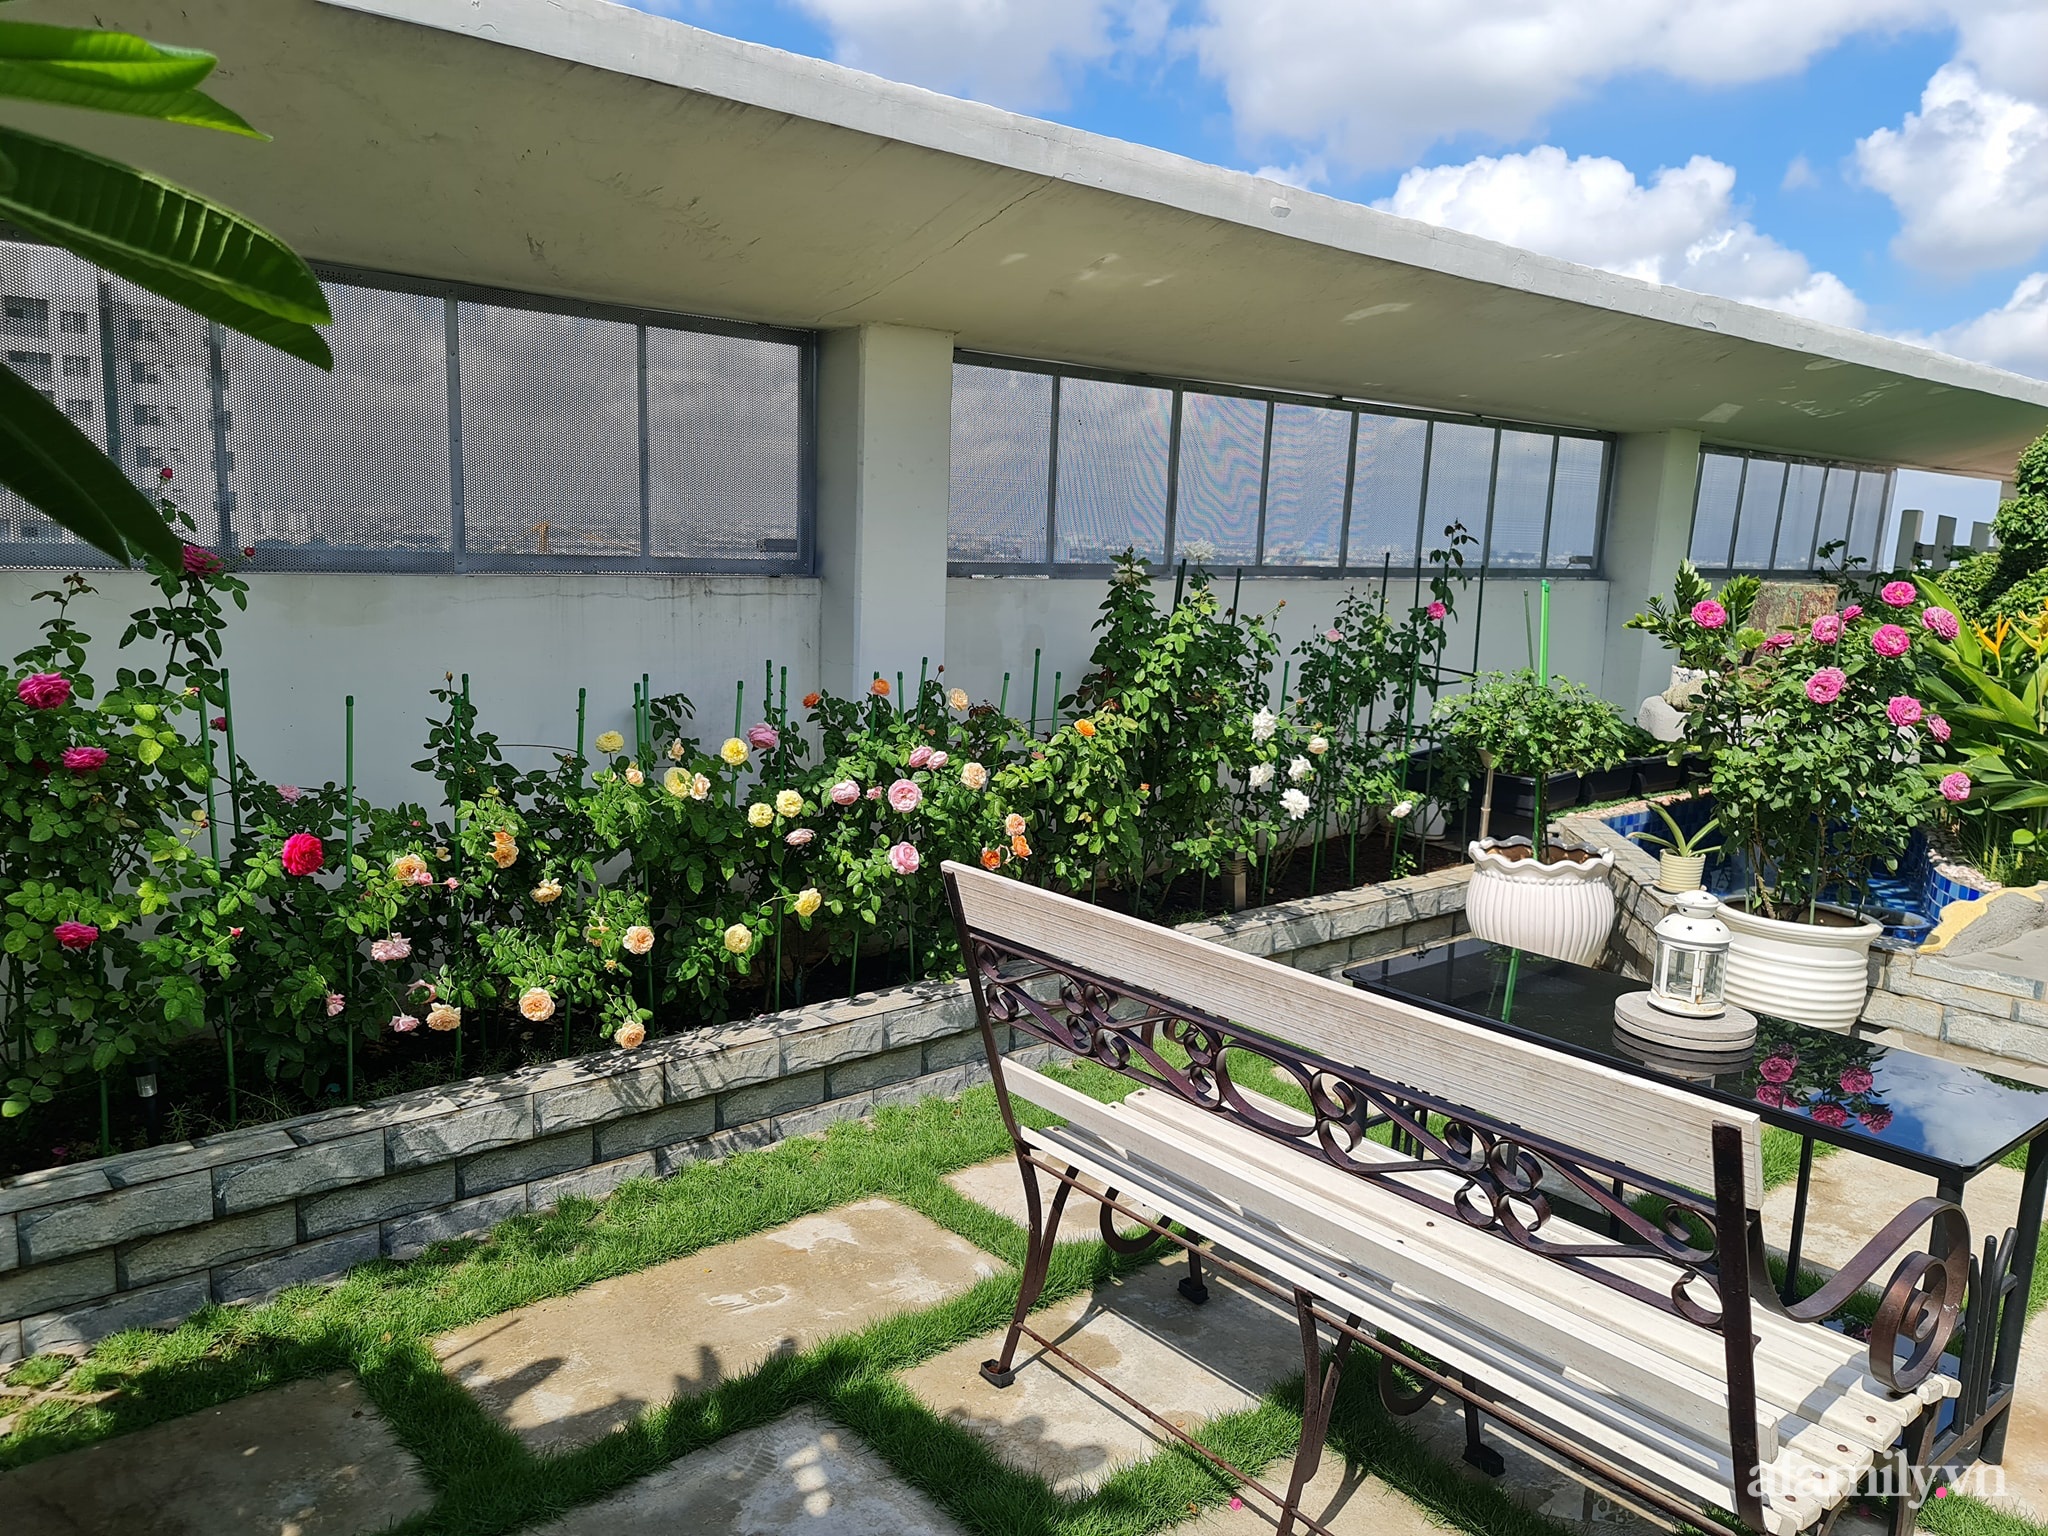 Đắm say trước vẻ đẹp ngọt lịm tim của vườn hồng rực rỡ trên sân thượng ở Bình Dương - Ảnh 5.